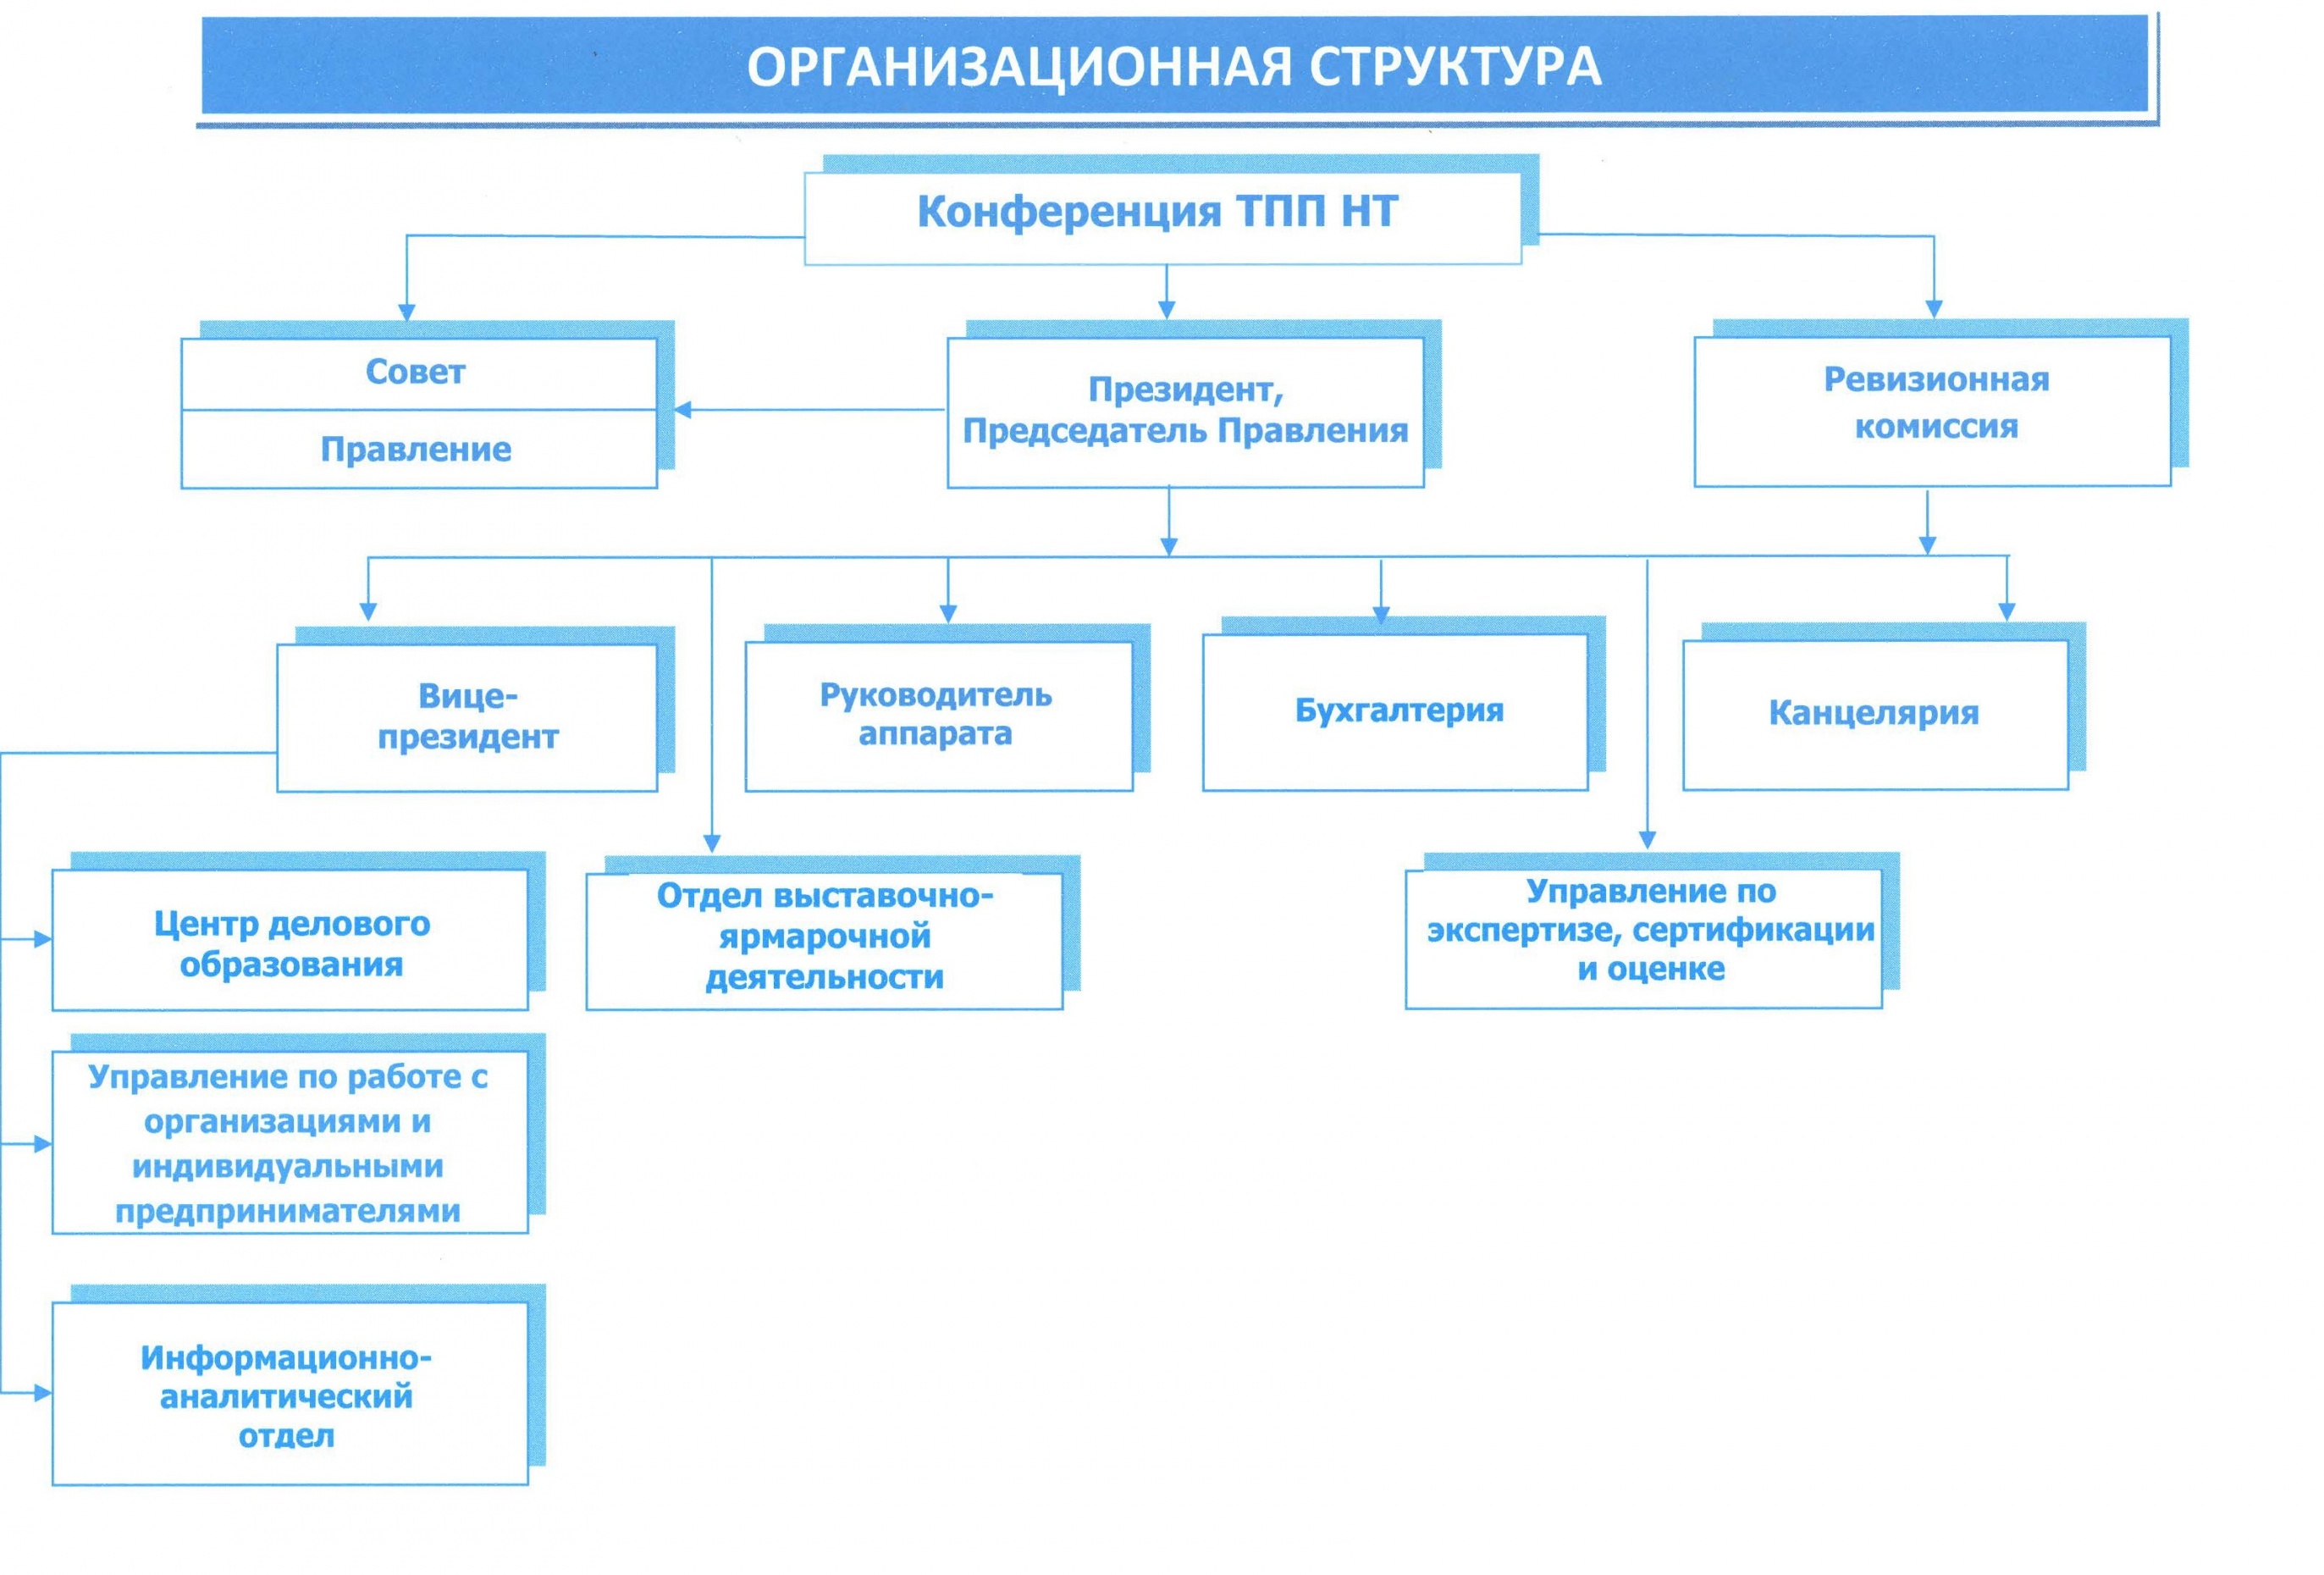 Организационная структура.jpg